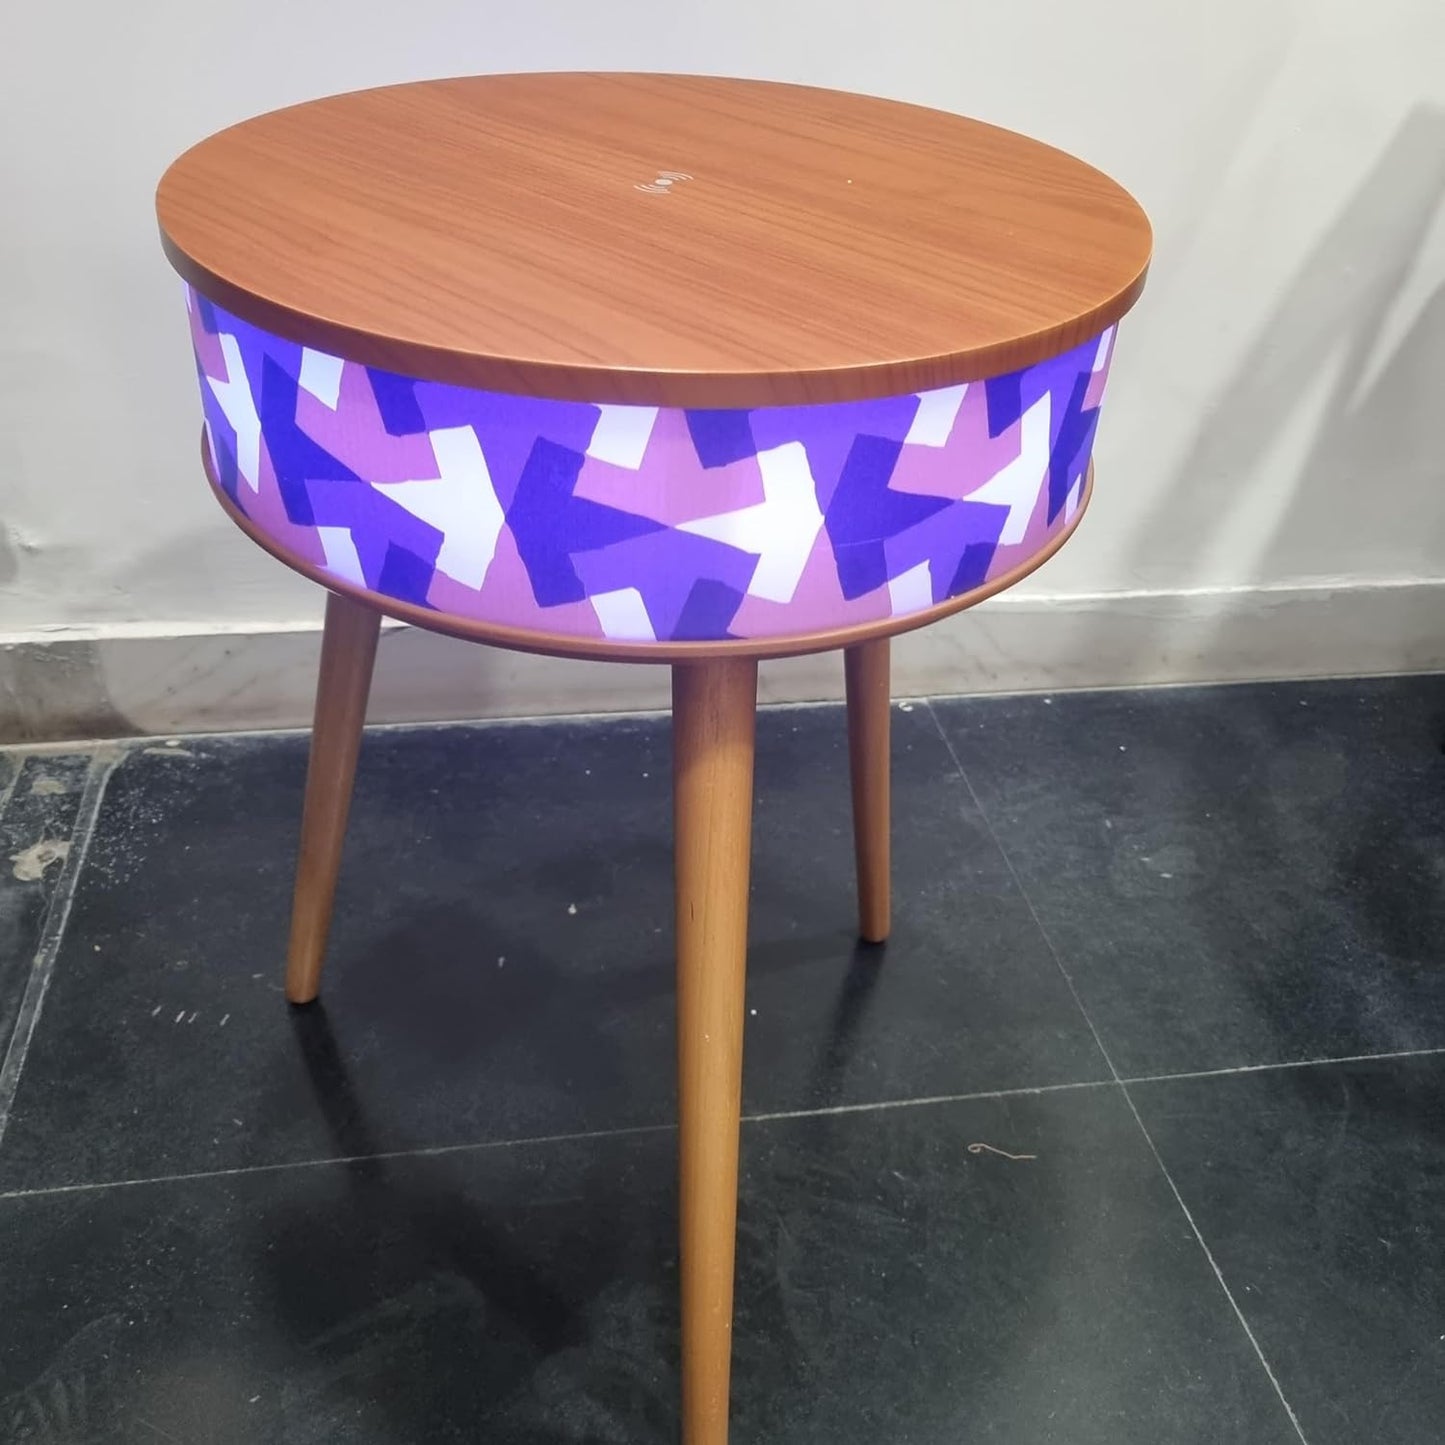 MARS Bluetooth Speaker Table with LED Lights